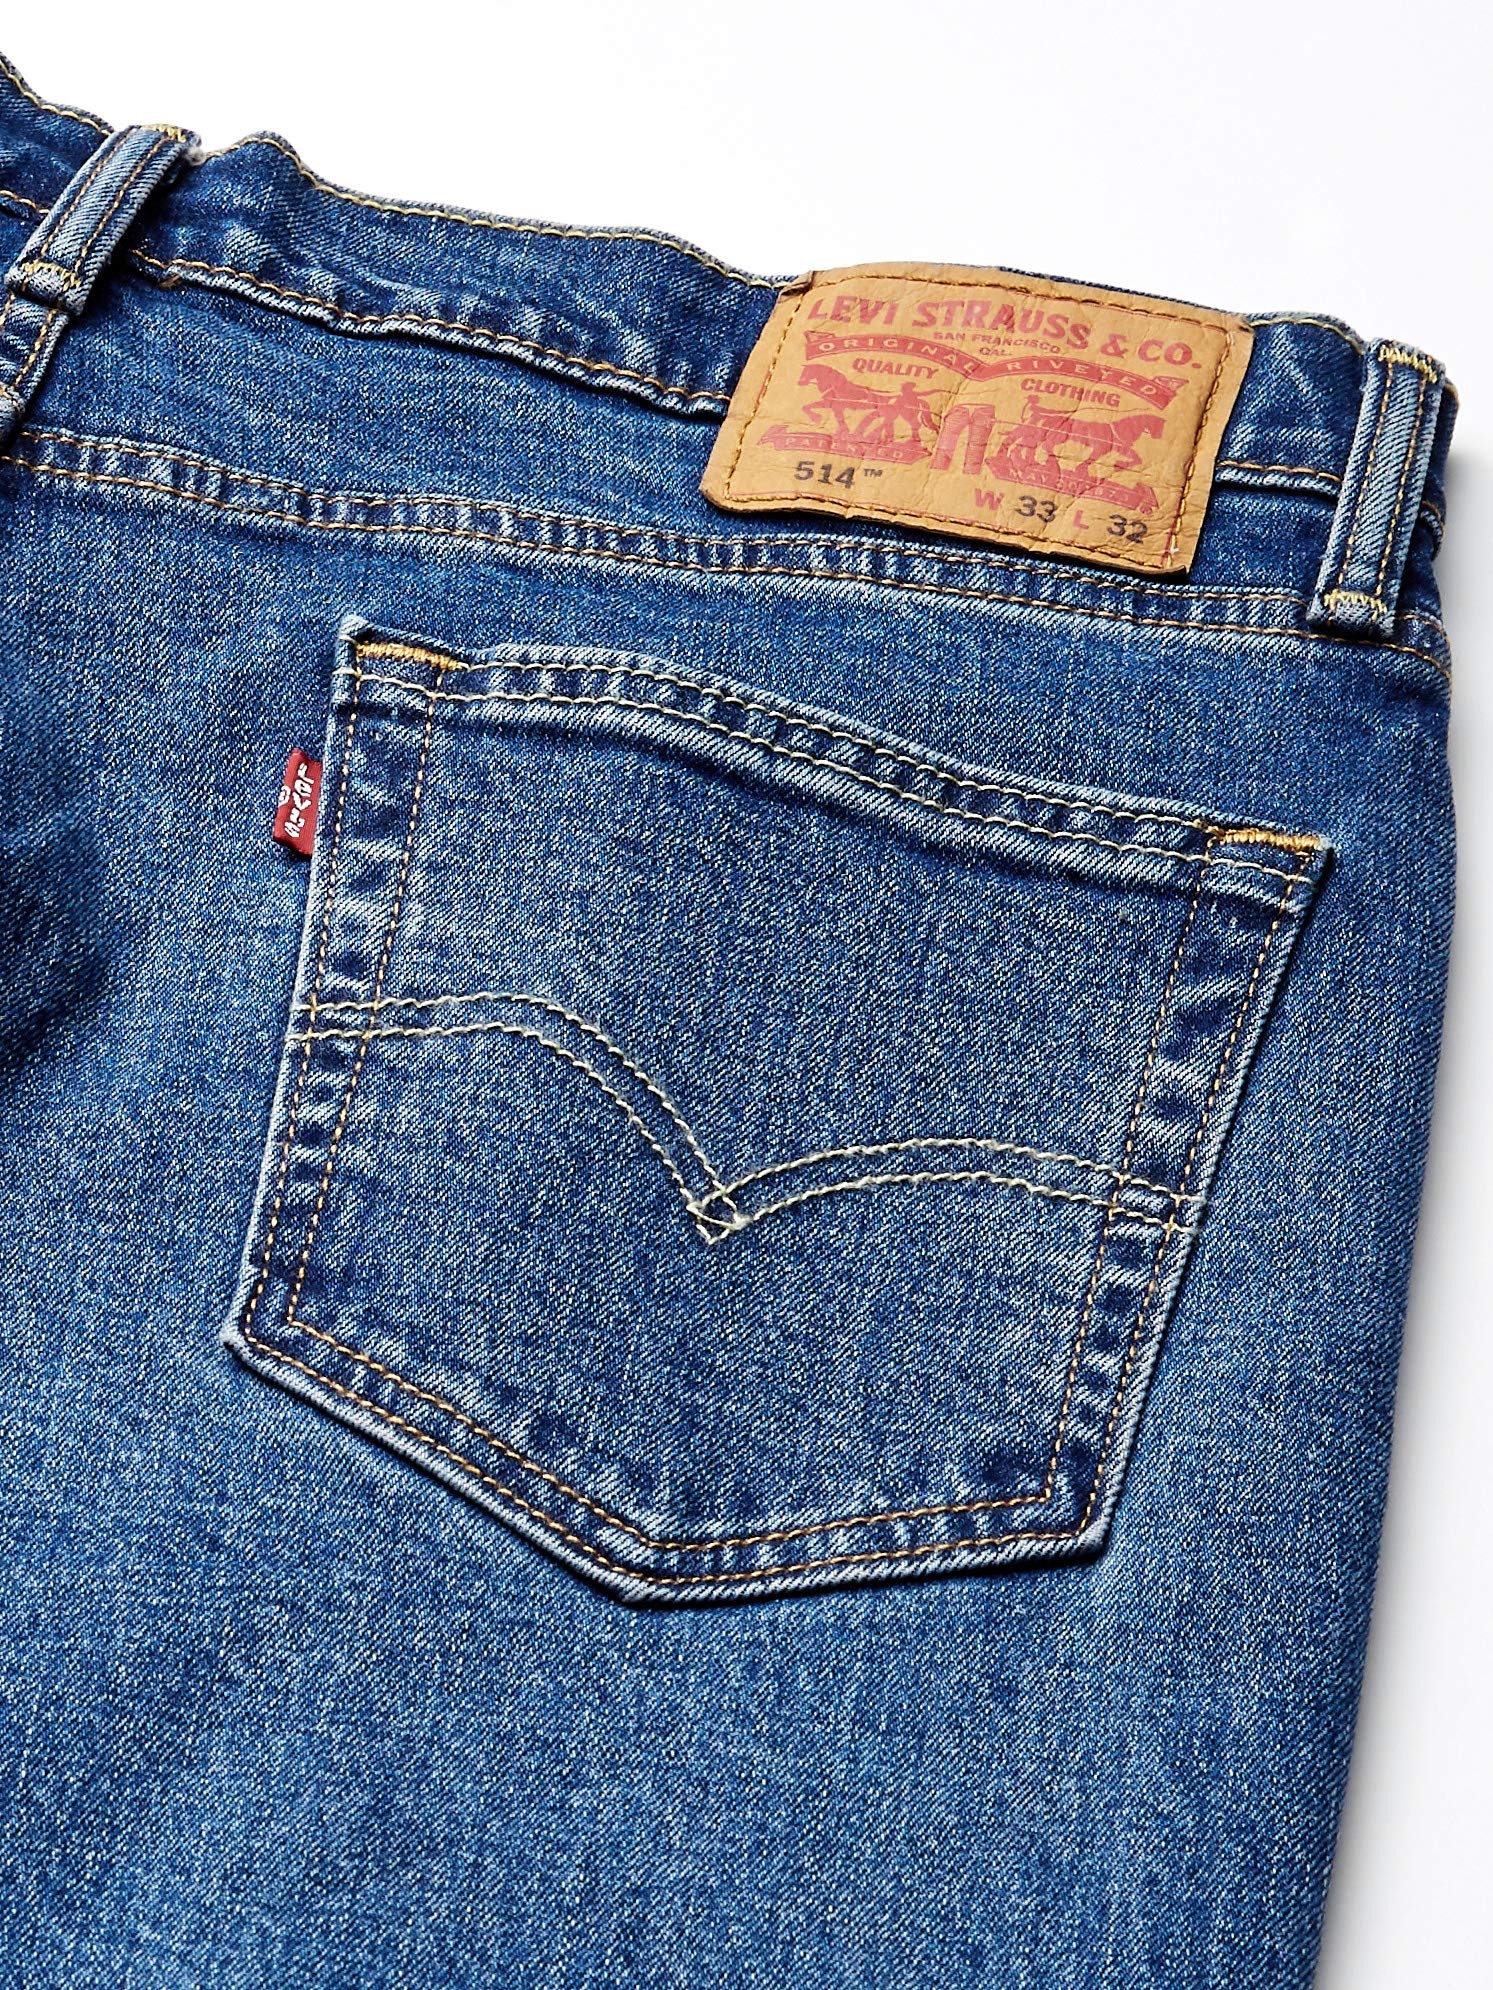 Levi's Men's 514 Straight Fit Cut Jeans